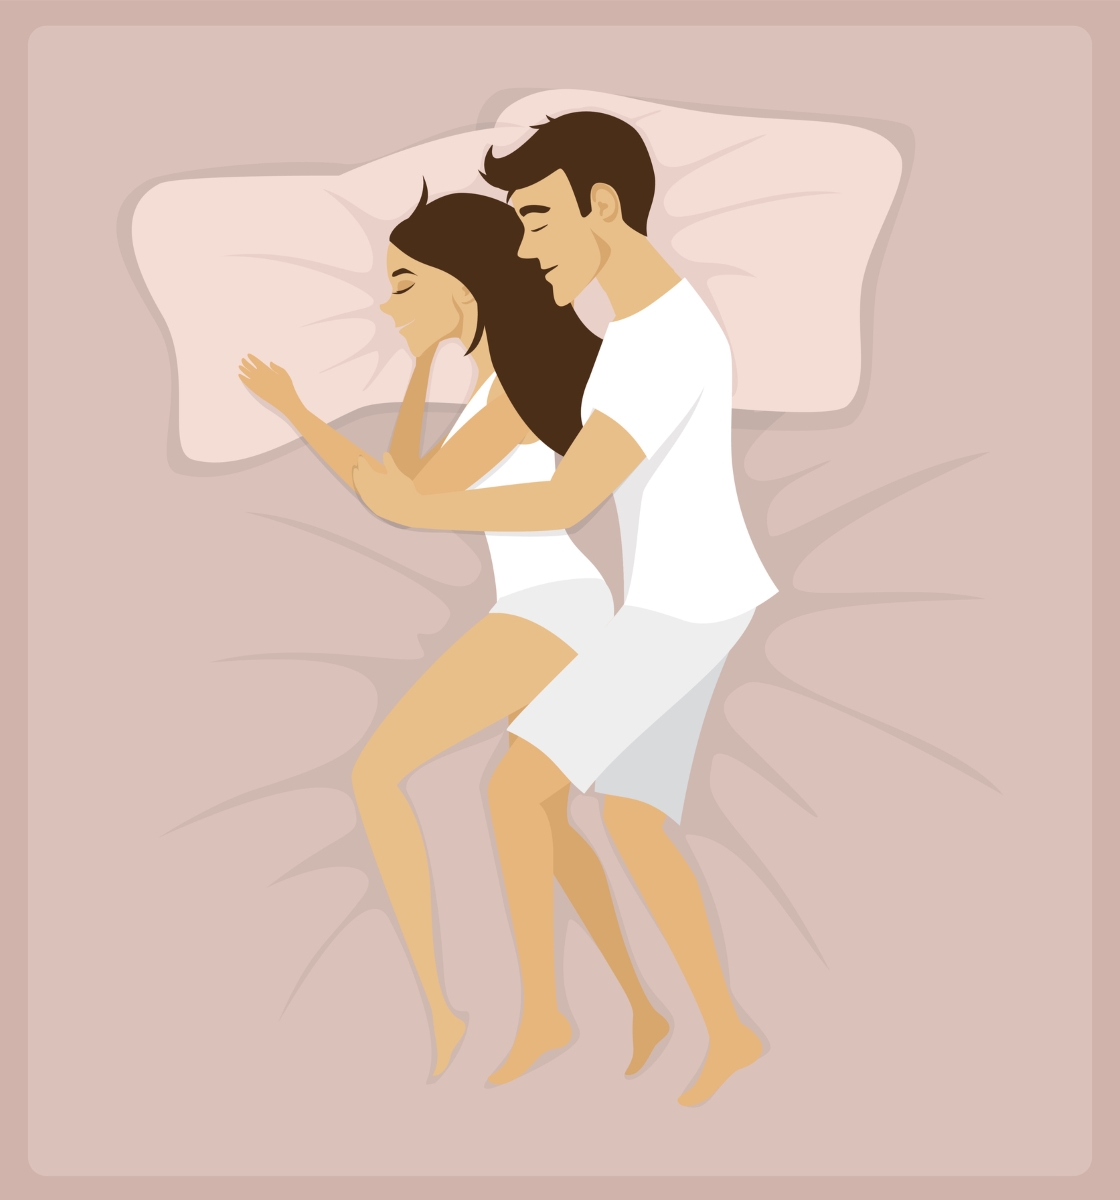 Поза "лъжички" позволява на вас и партньора да сте легнали през цялото време. Физическо усилие - сведено до минимум.